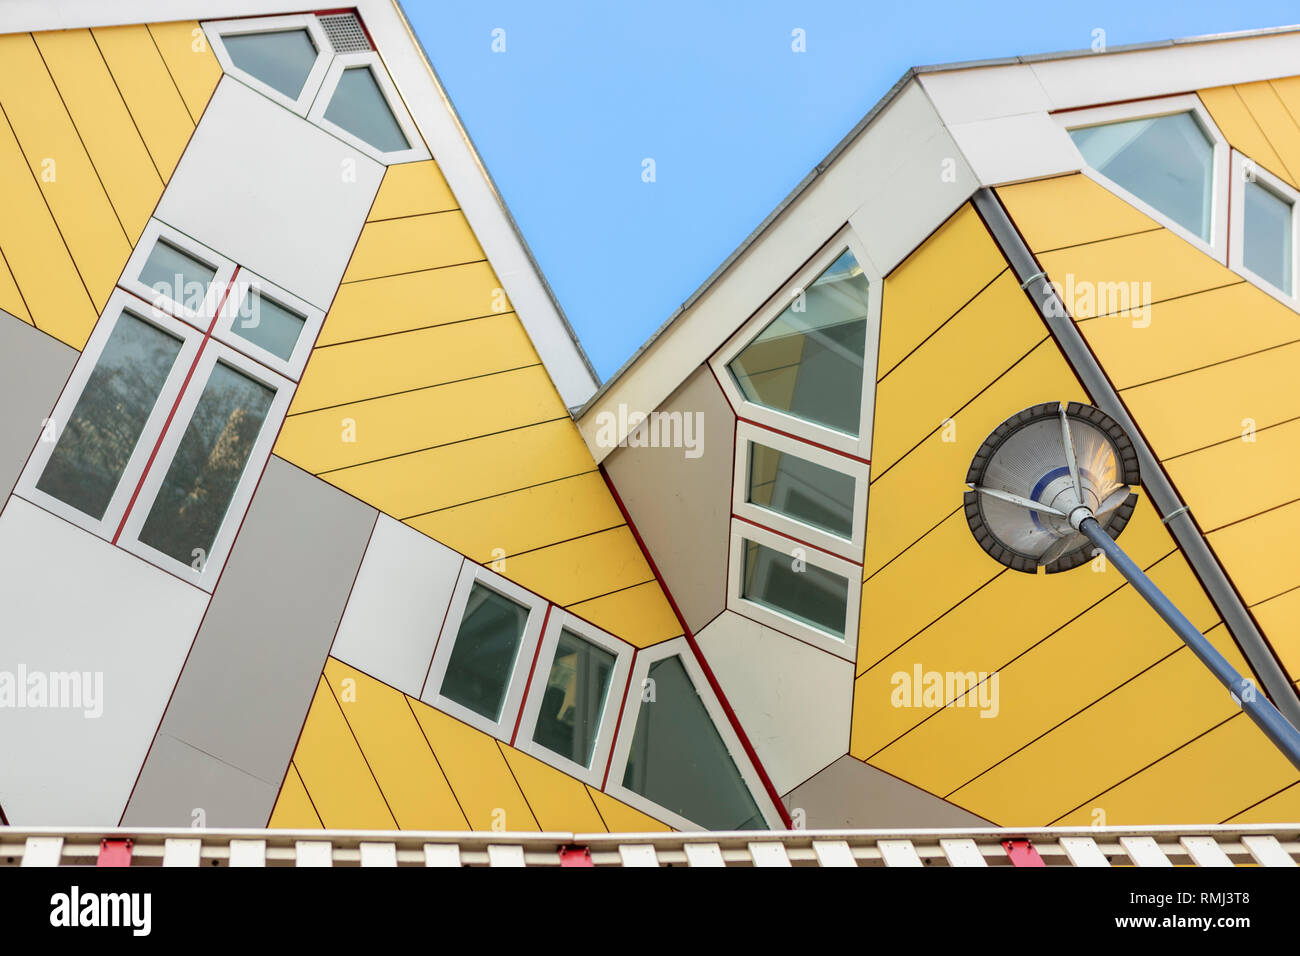 Detailansicht von zwei der berühmten gekippt cube Häuser in Rotterdam, Niederlande, mit im Vordergrund eine Laterne Pol Stockfoto